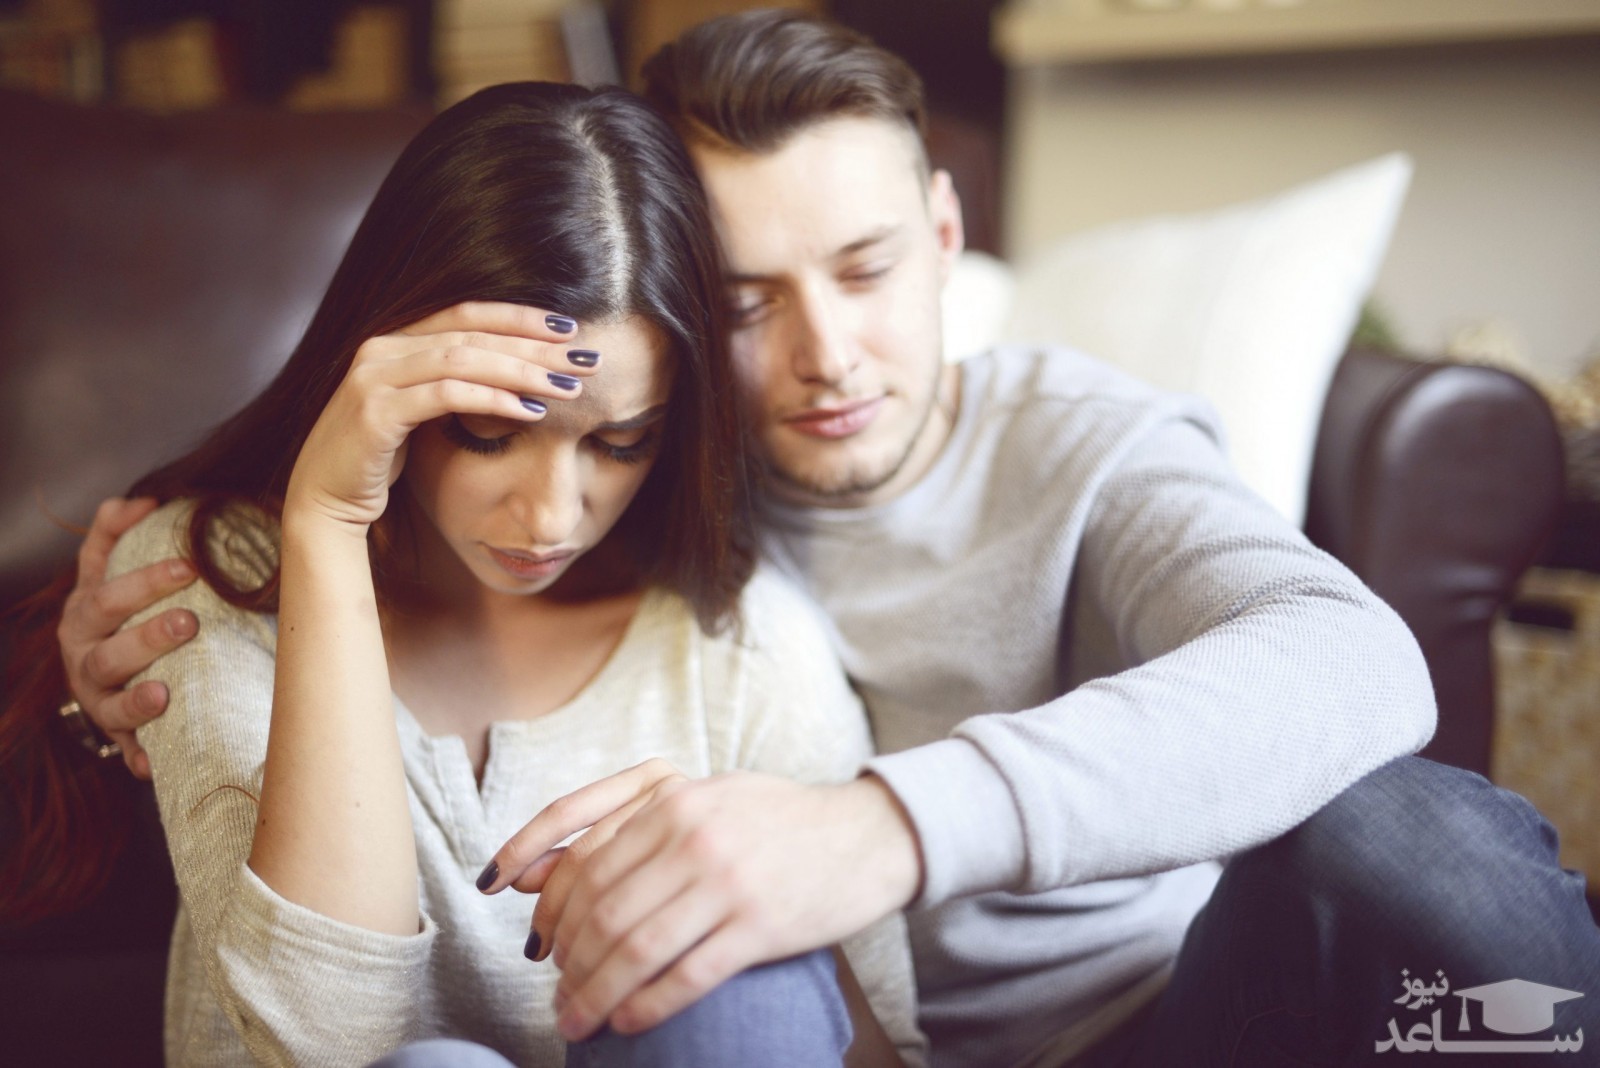 افکار و انتظارات اشتباه زنان در زندگی مشترک